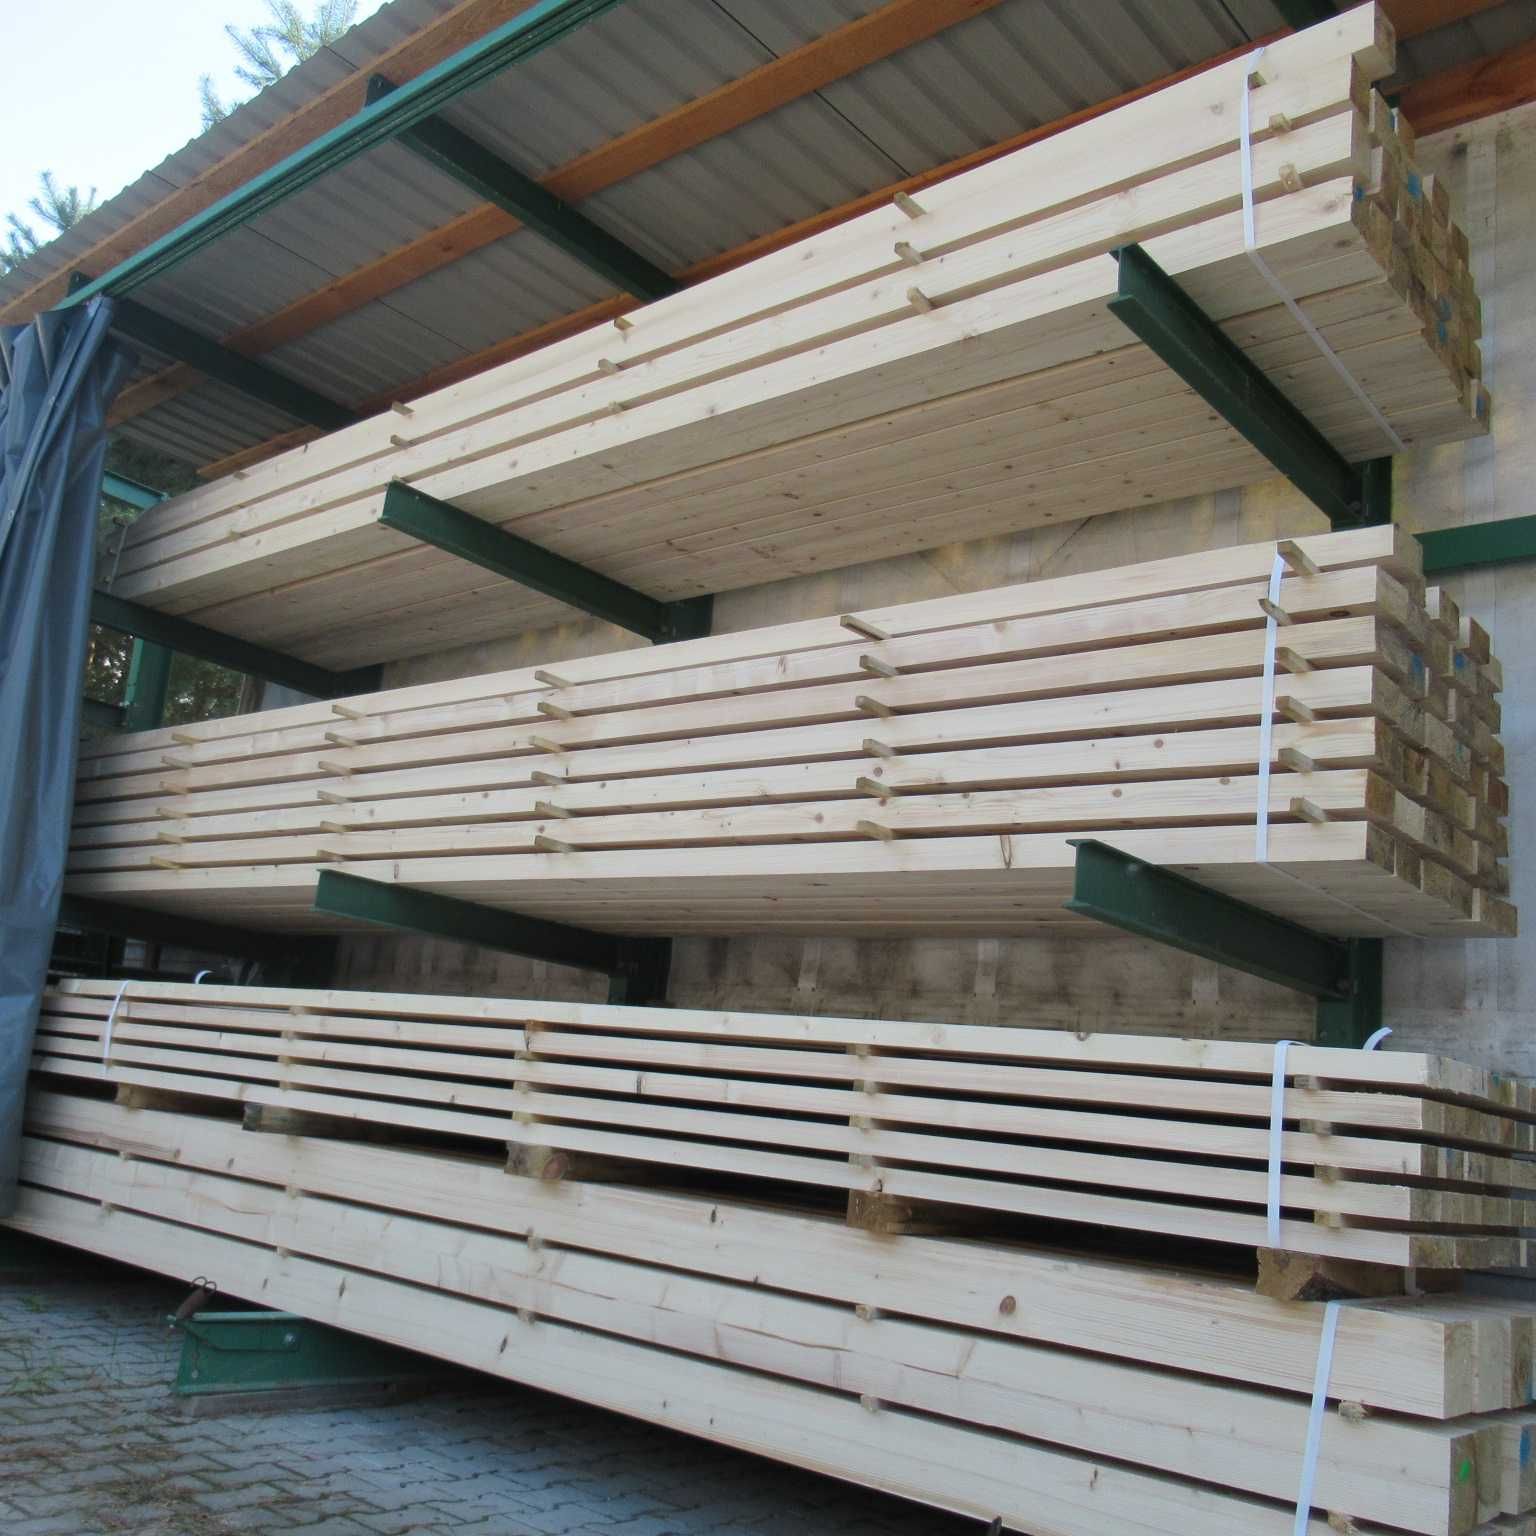 Drewno konstrukcyjne strugane